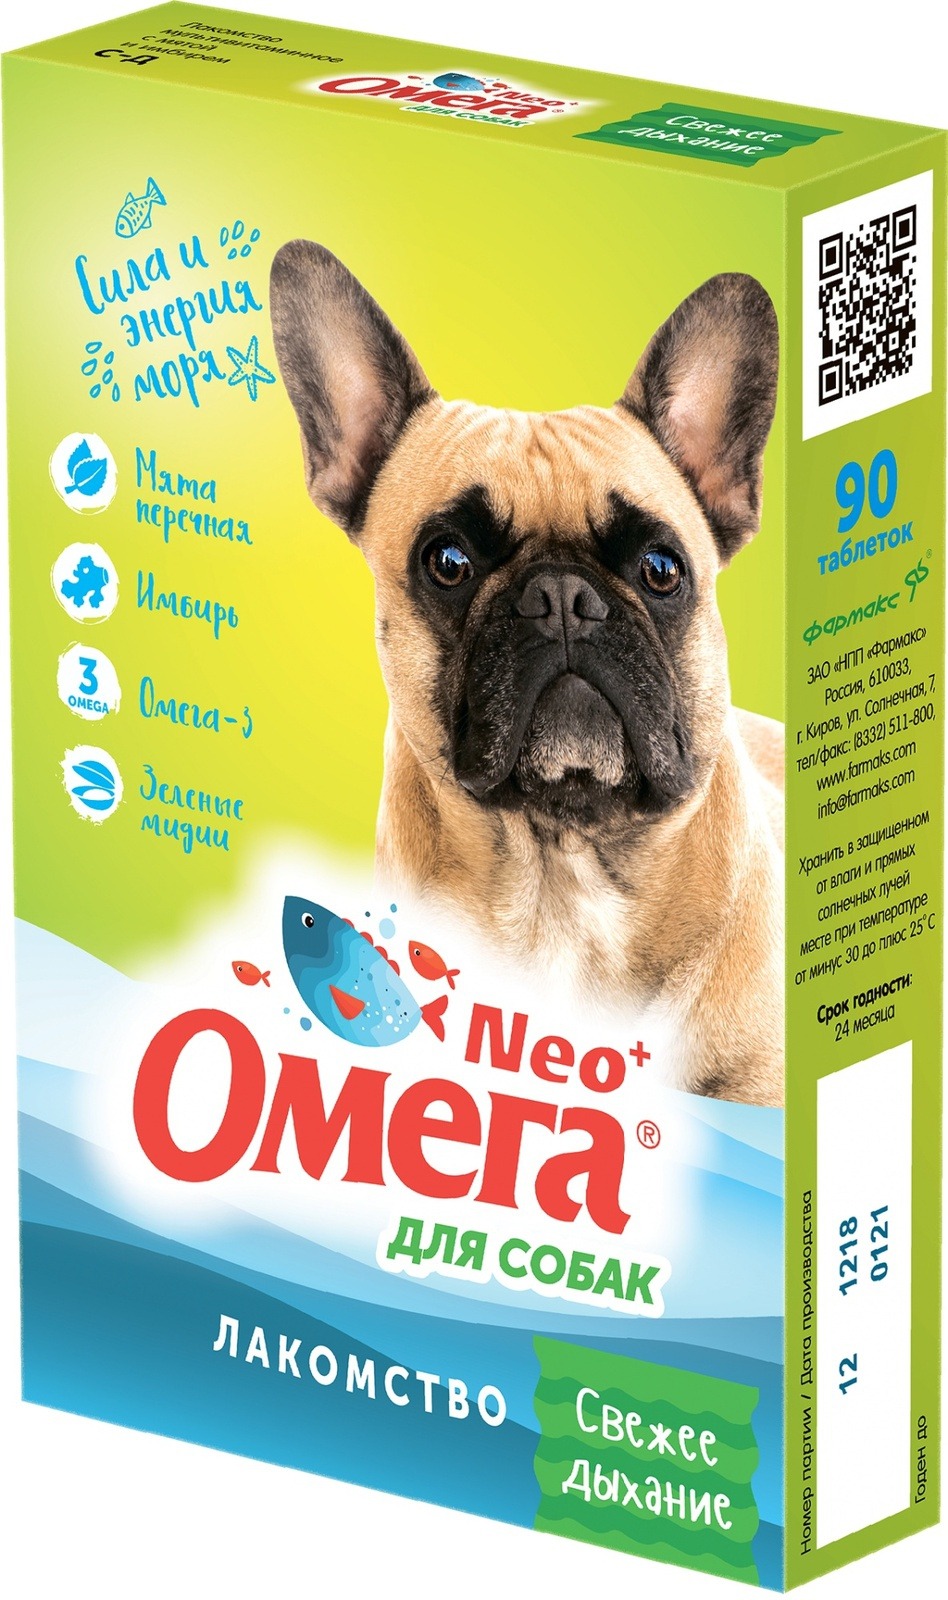 Витаминный комплекс для собак Омега Neo+, «Свежее дыхание» с мятой и имбирем 90 таб